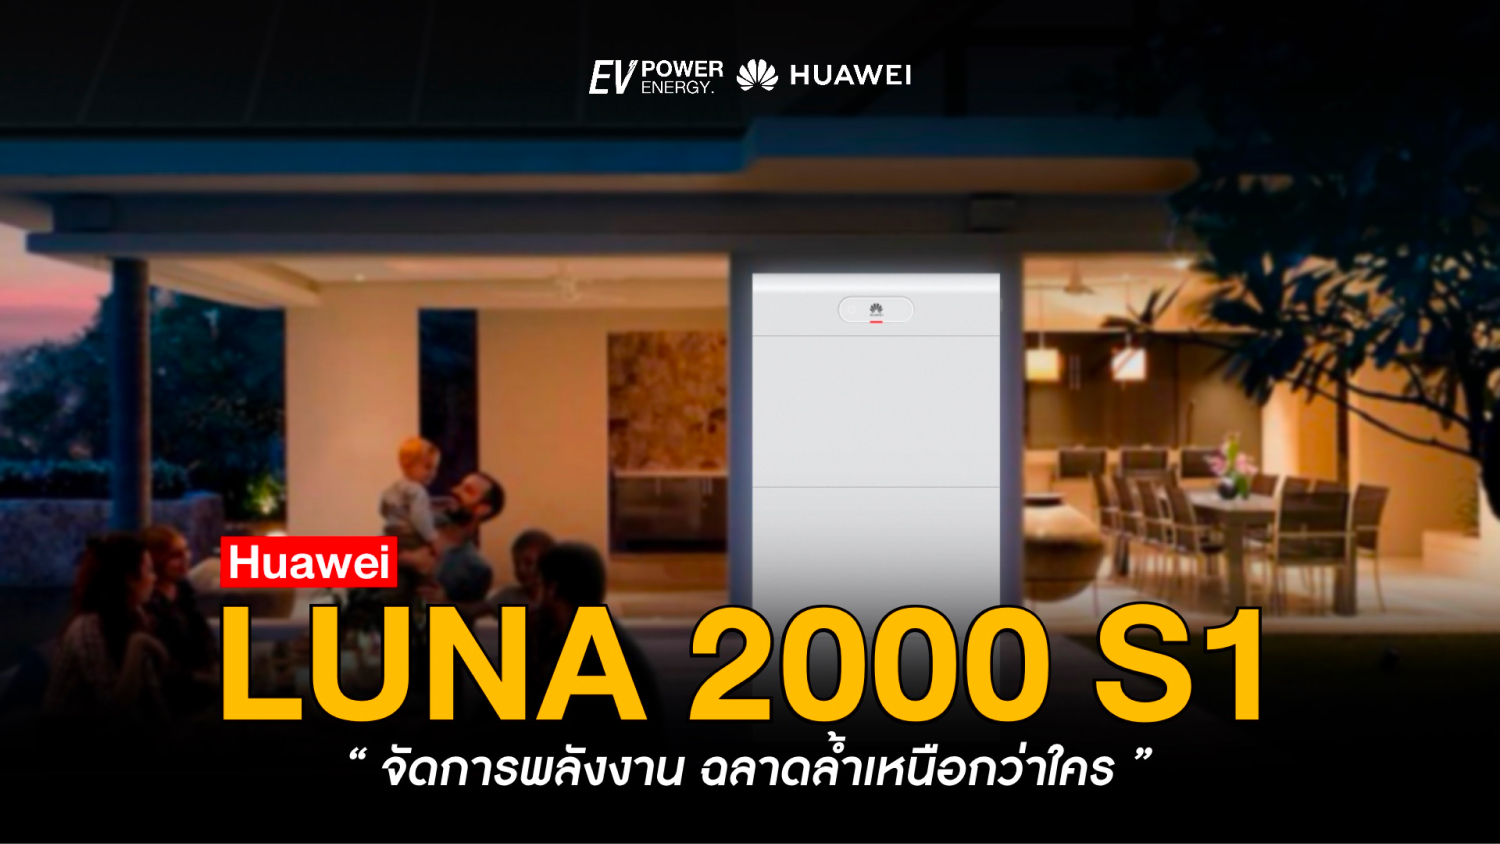 LUNA 2000 S1 จัดการพลังงาน ฉลาดล้ำเหนือกว่าใคร